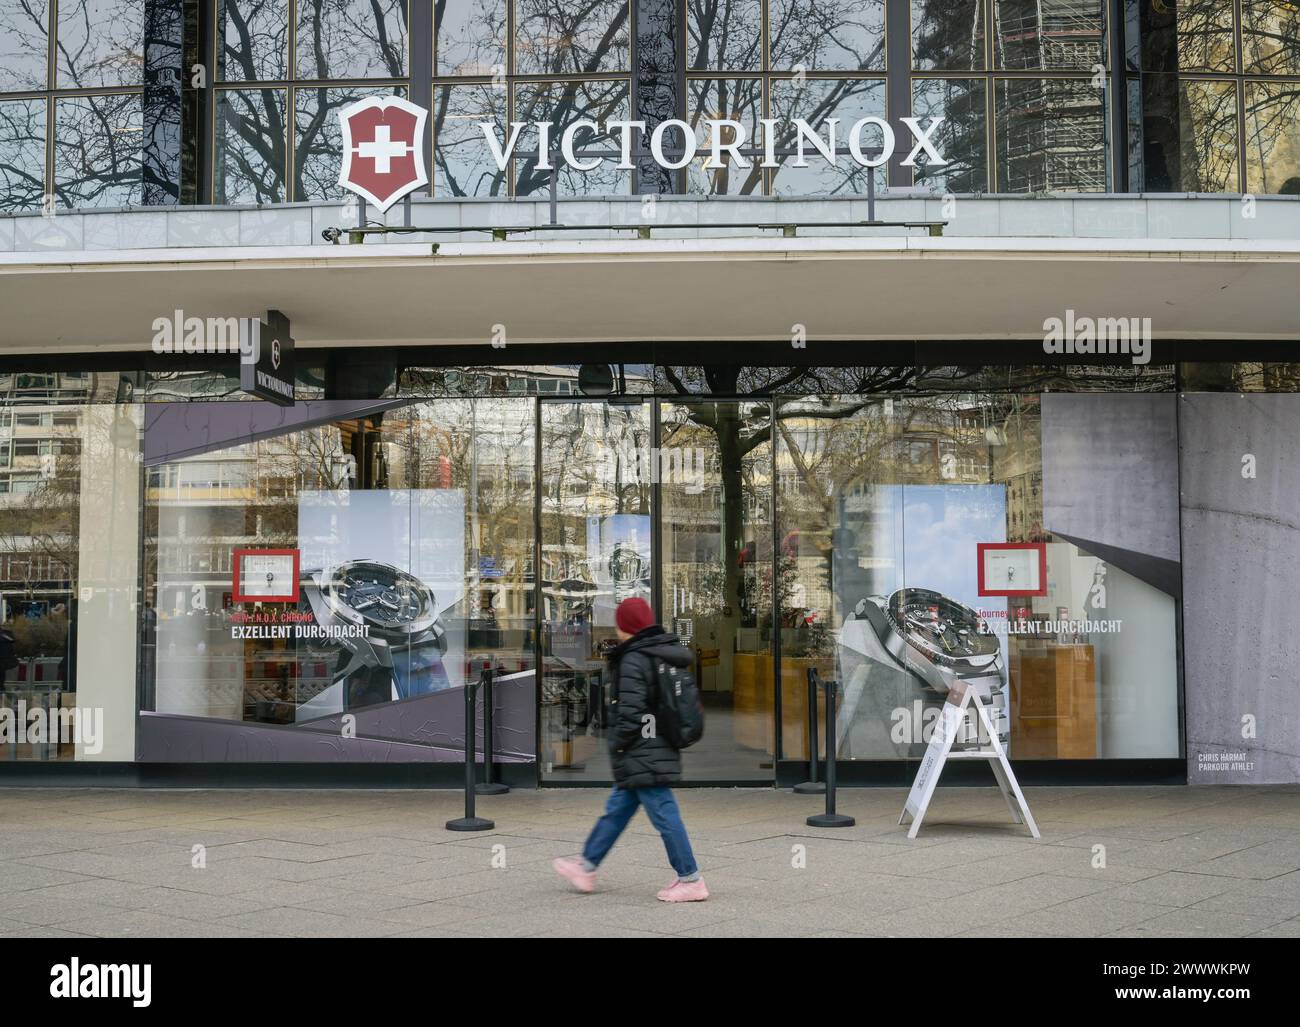 Victorinox, Geschäft, Tauentzienstraße, Charlottenburg, Berlin, Deutschland Banque D'Images